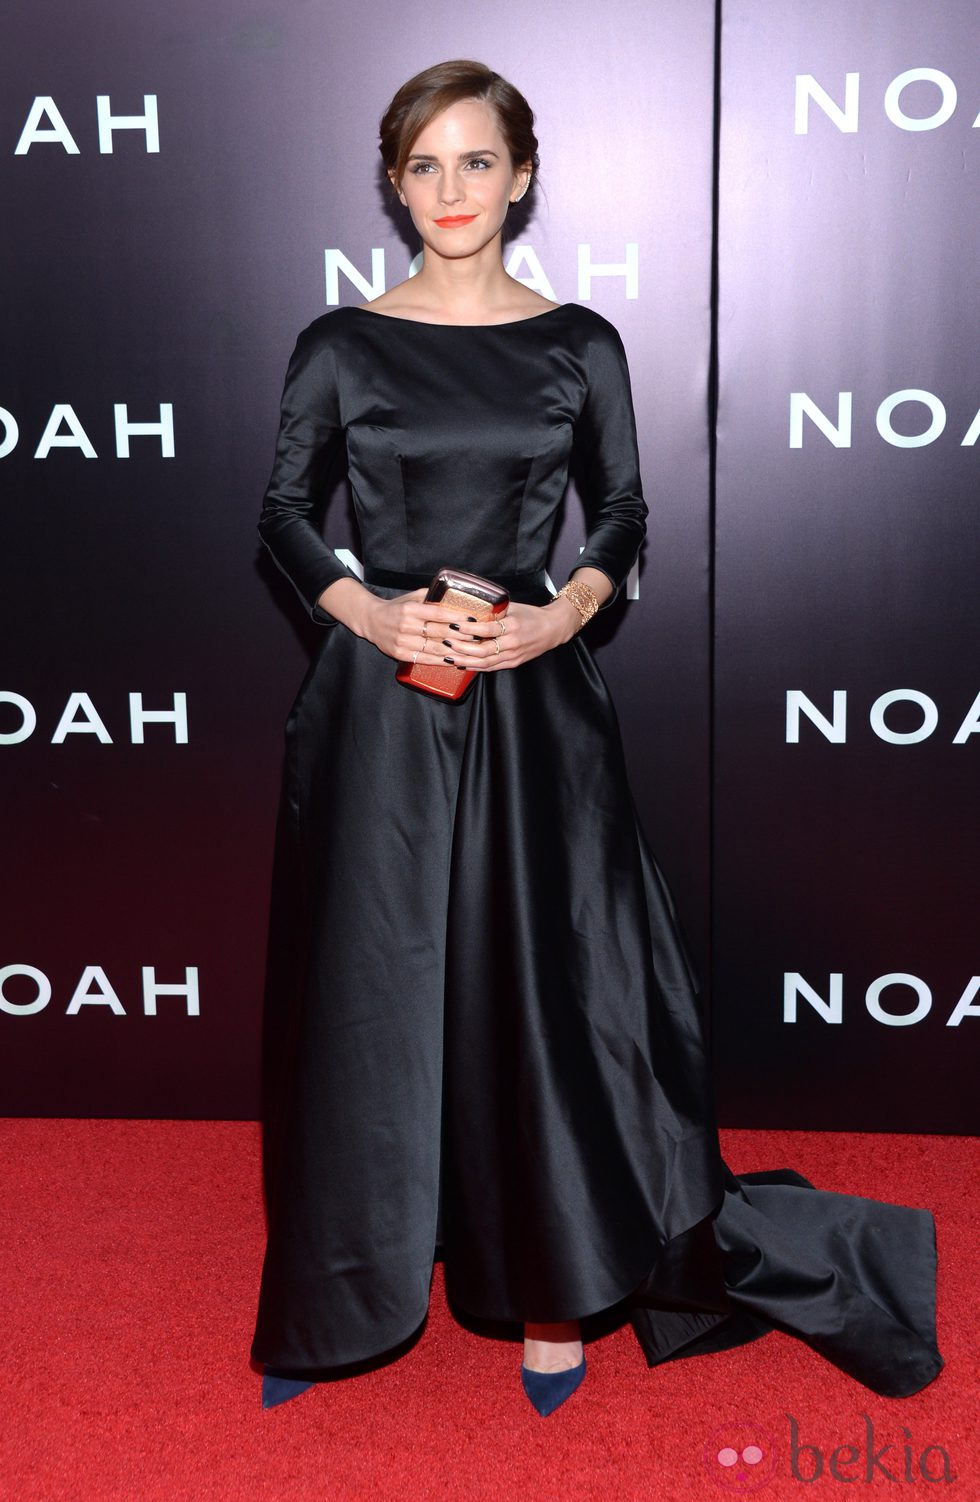 Emma Watson en el estreno de 'Noé' en Nueva York